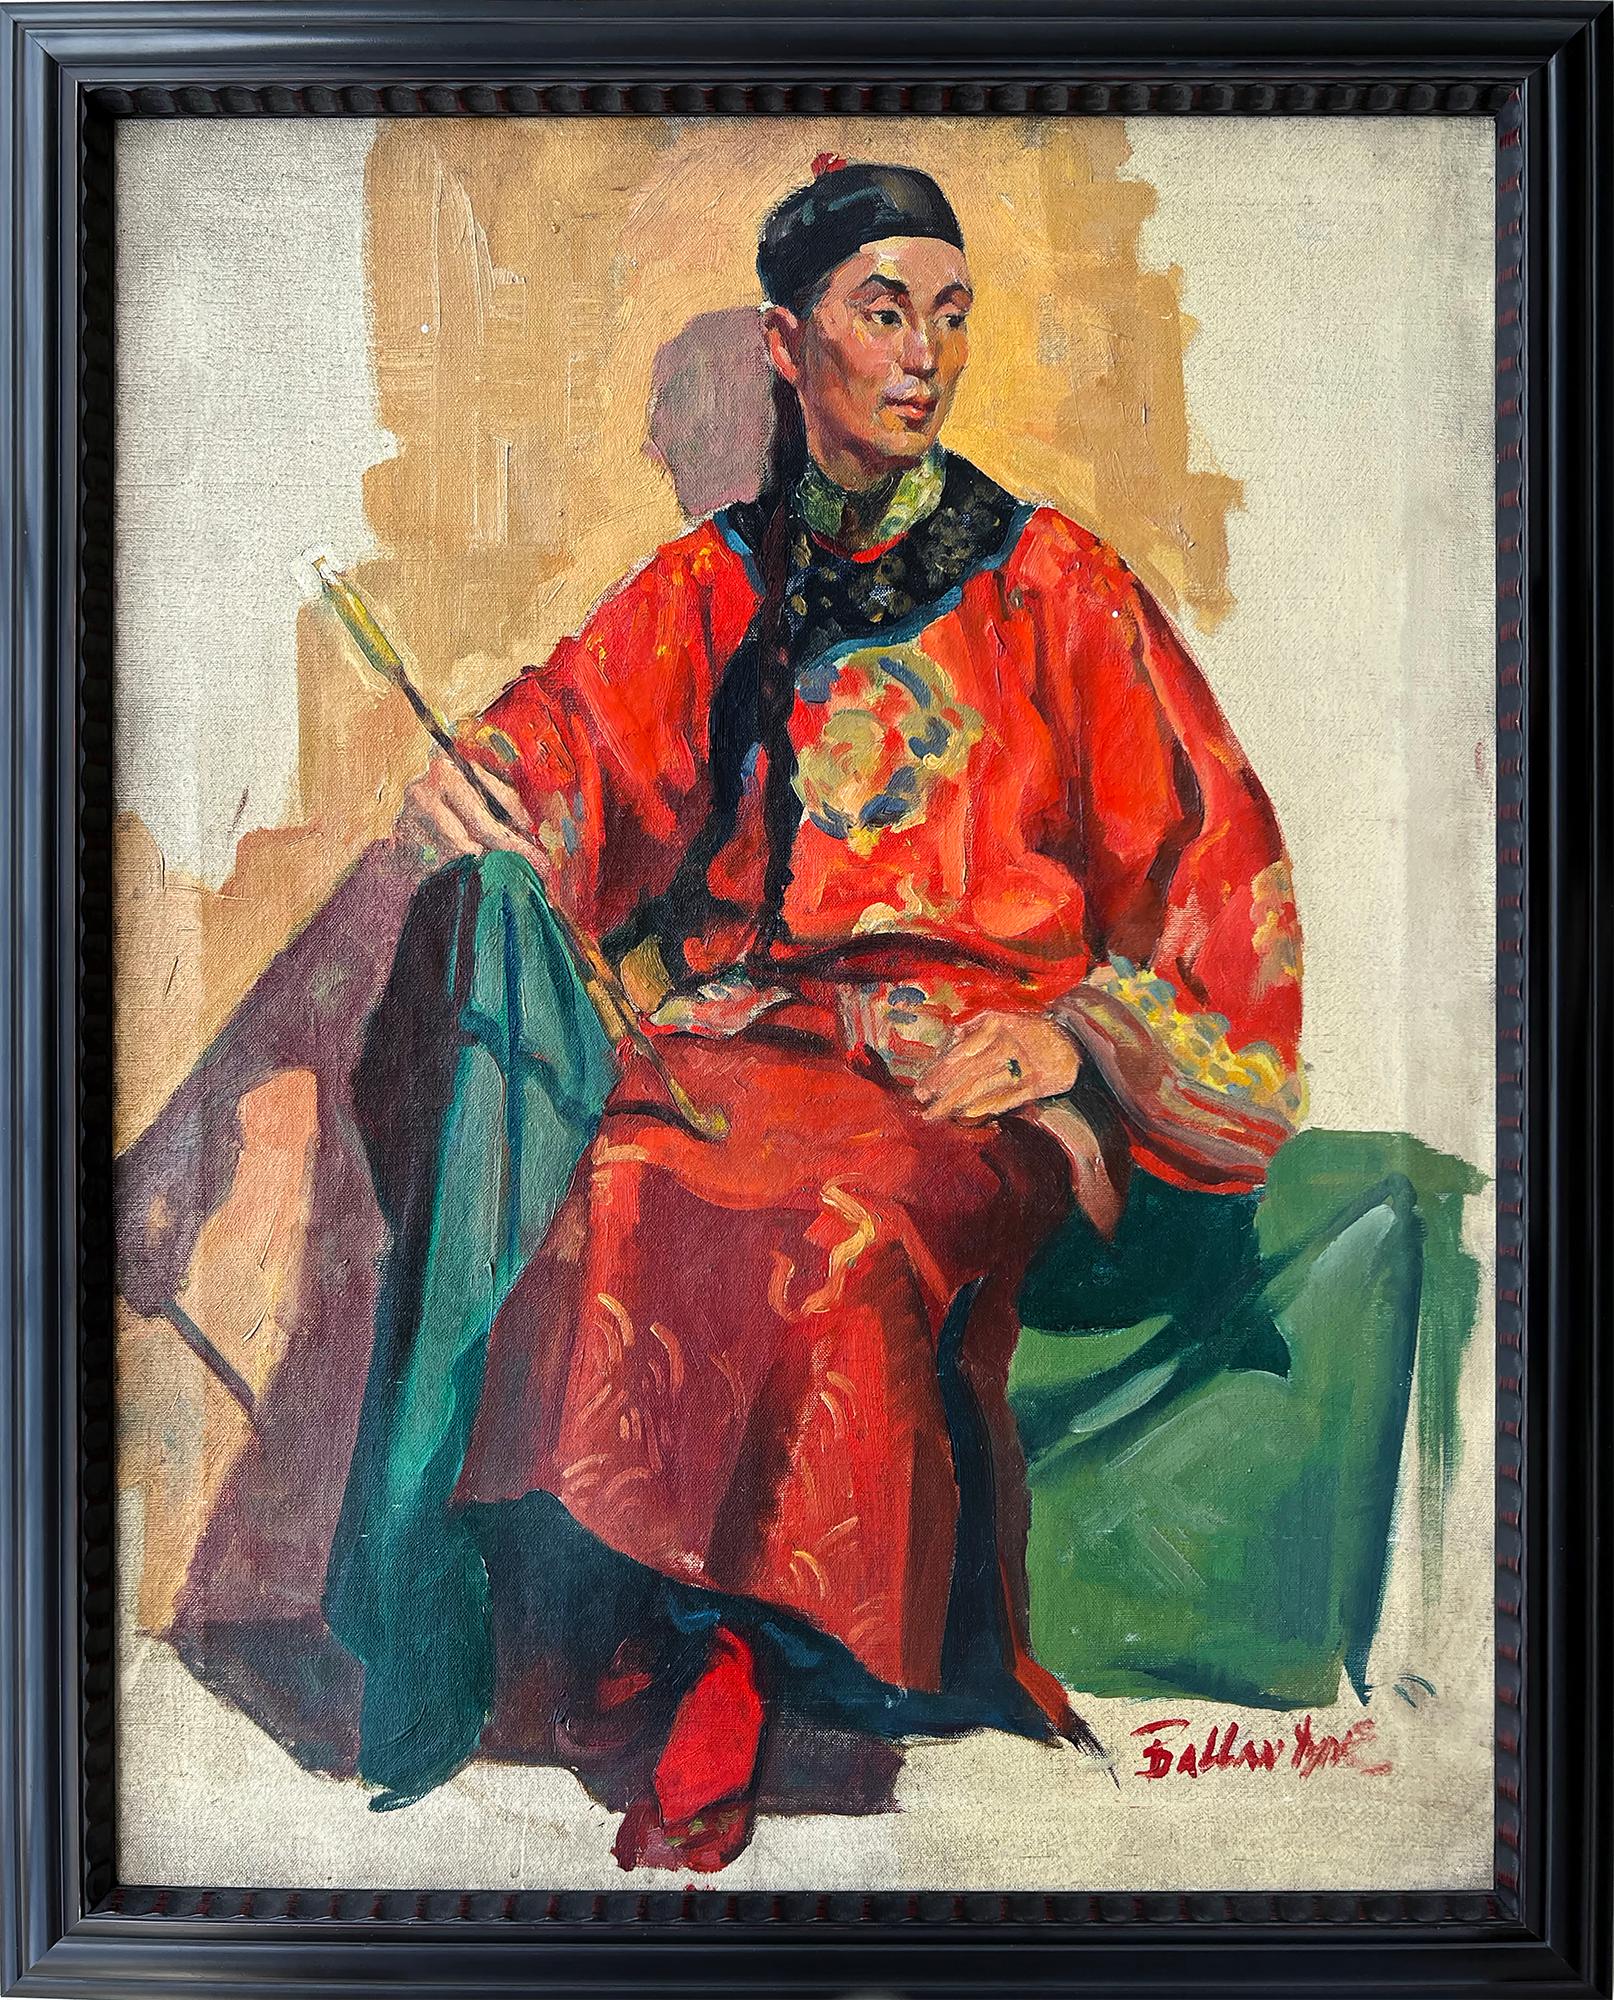 Gekleidet in traditioneller Kleidung,  ist ein gutaussehender Chinese abgebildet, der entschlossen mit einer Hand auf seinem Bein sitzt und mit der anderen einen Schlagstock hält. Die Künstlerin Joyce Ballantyne malt mit schnellen, sicheren